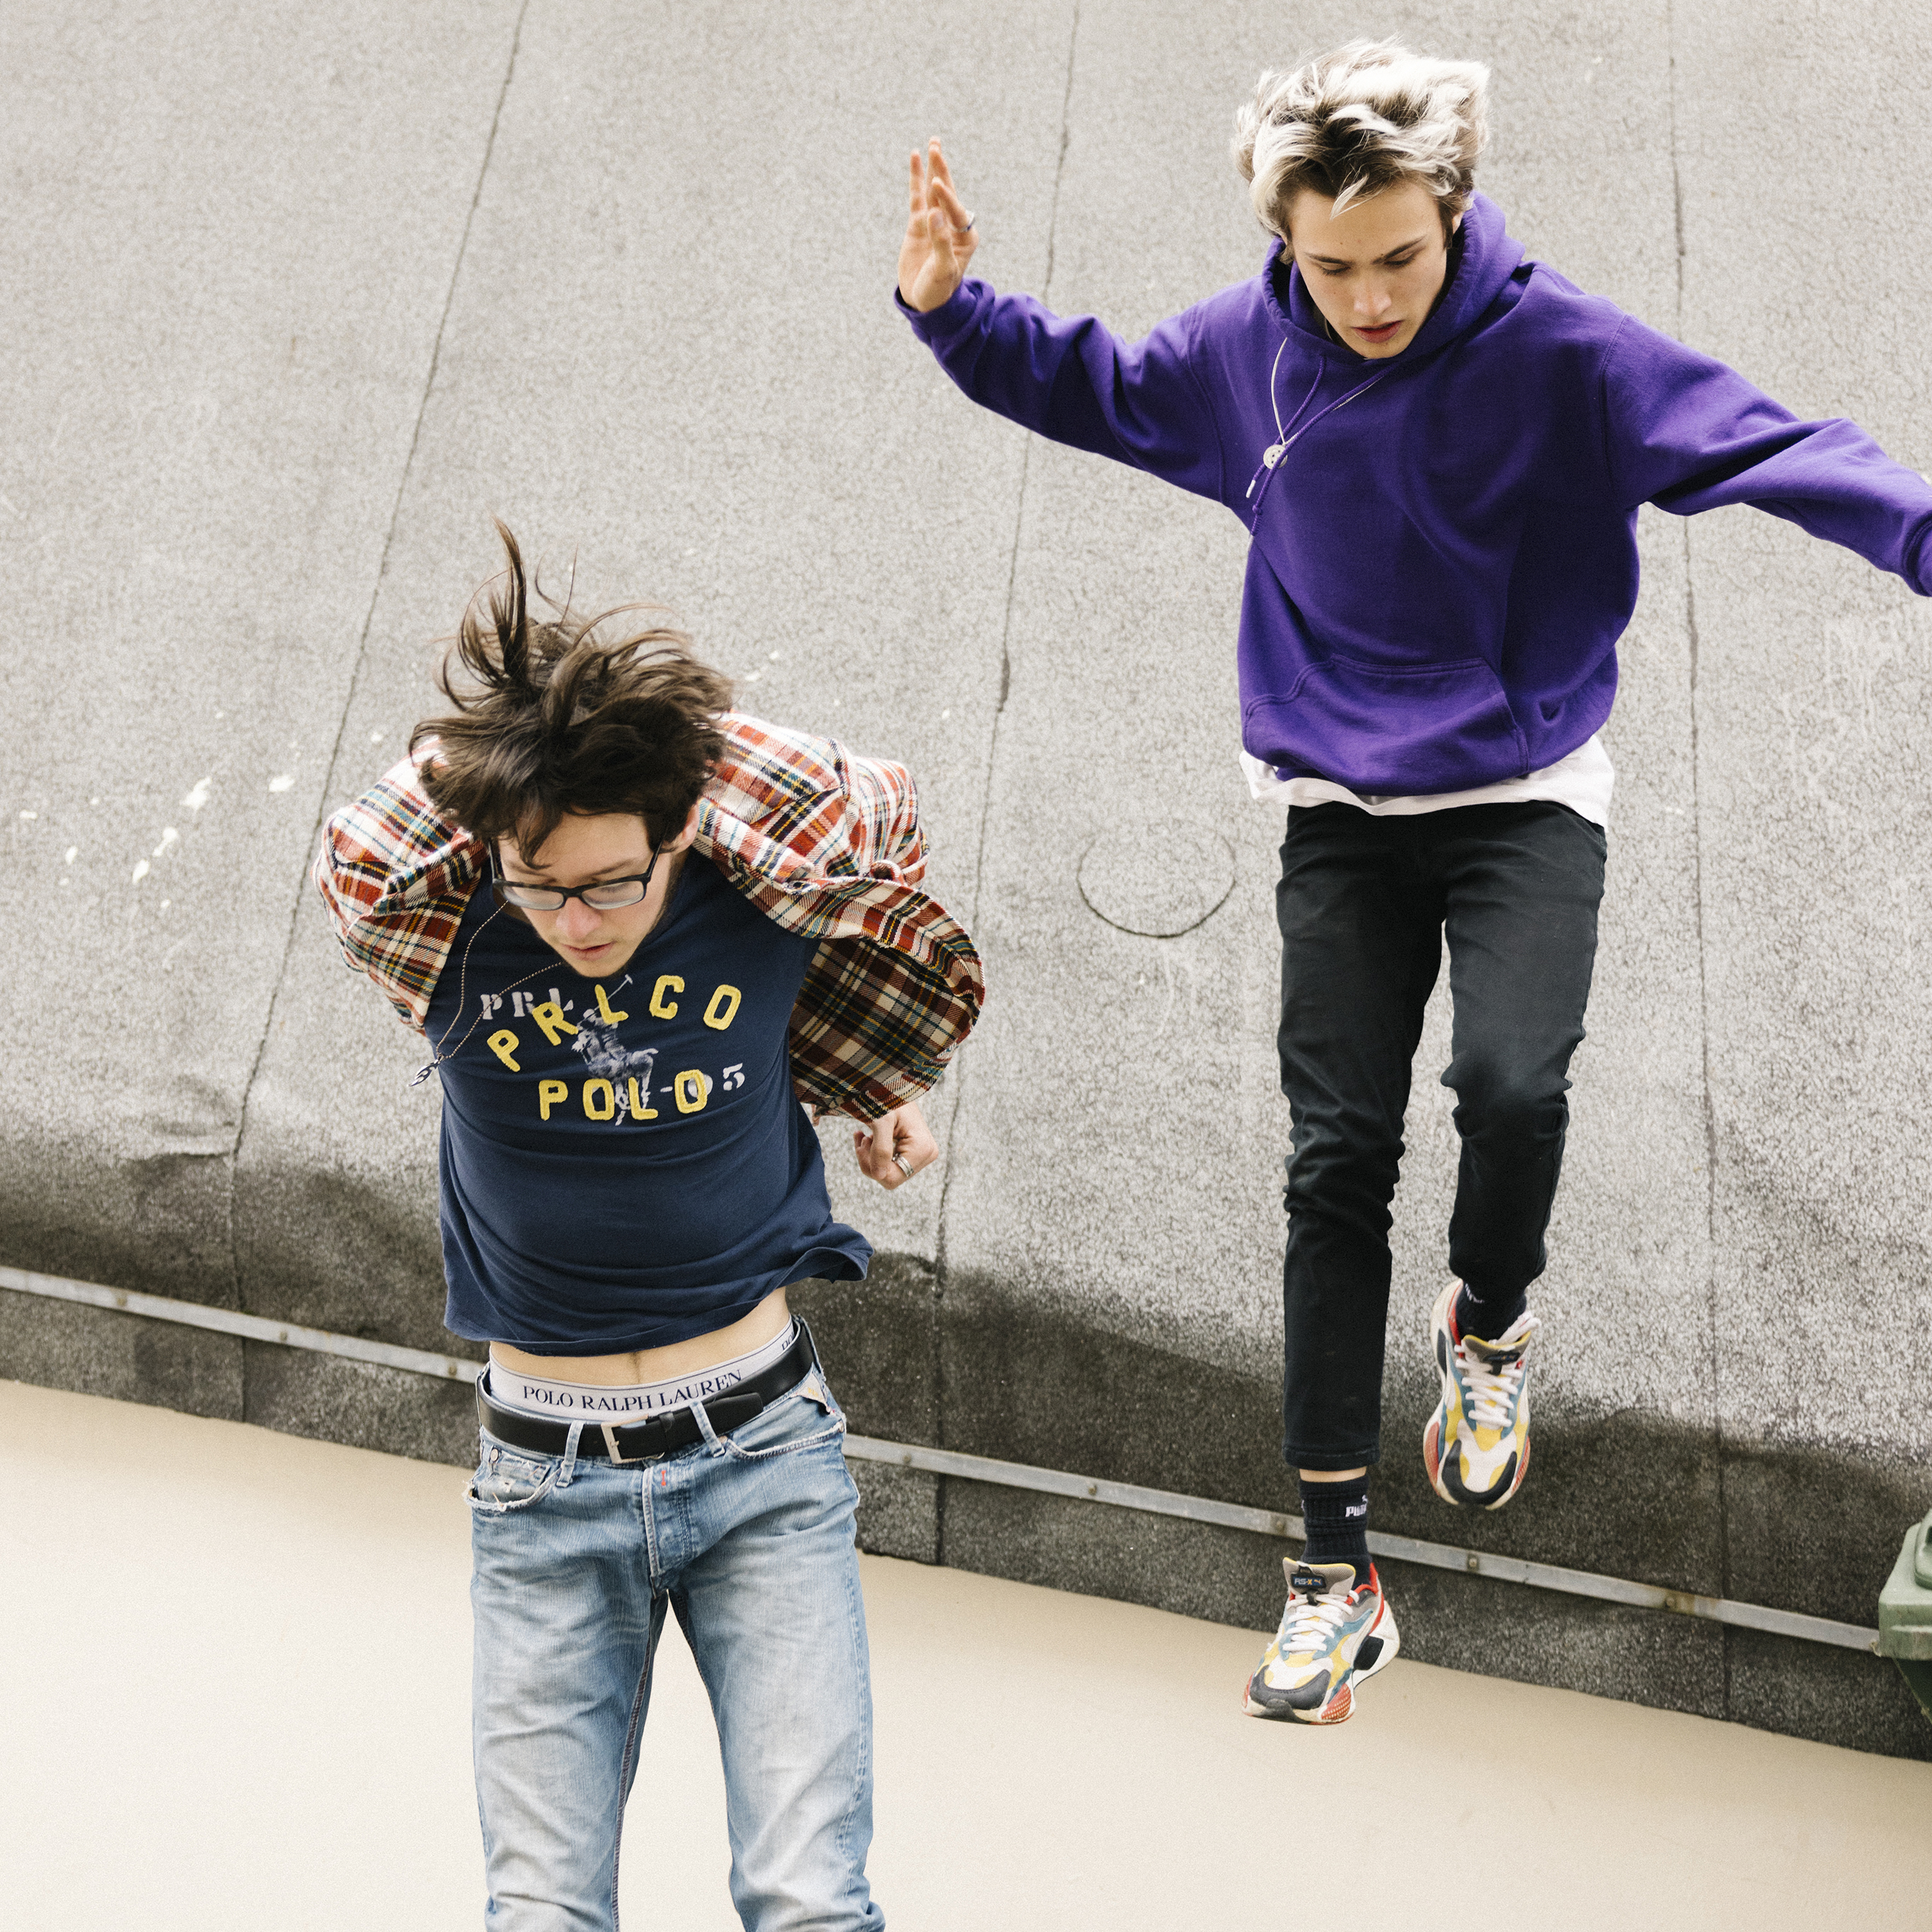 Zwei Jugendliche springen mit konzentriertem Blick von einem Dach.